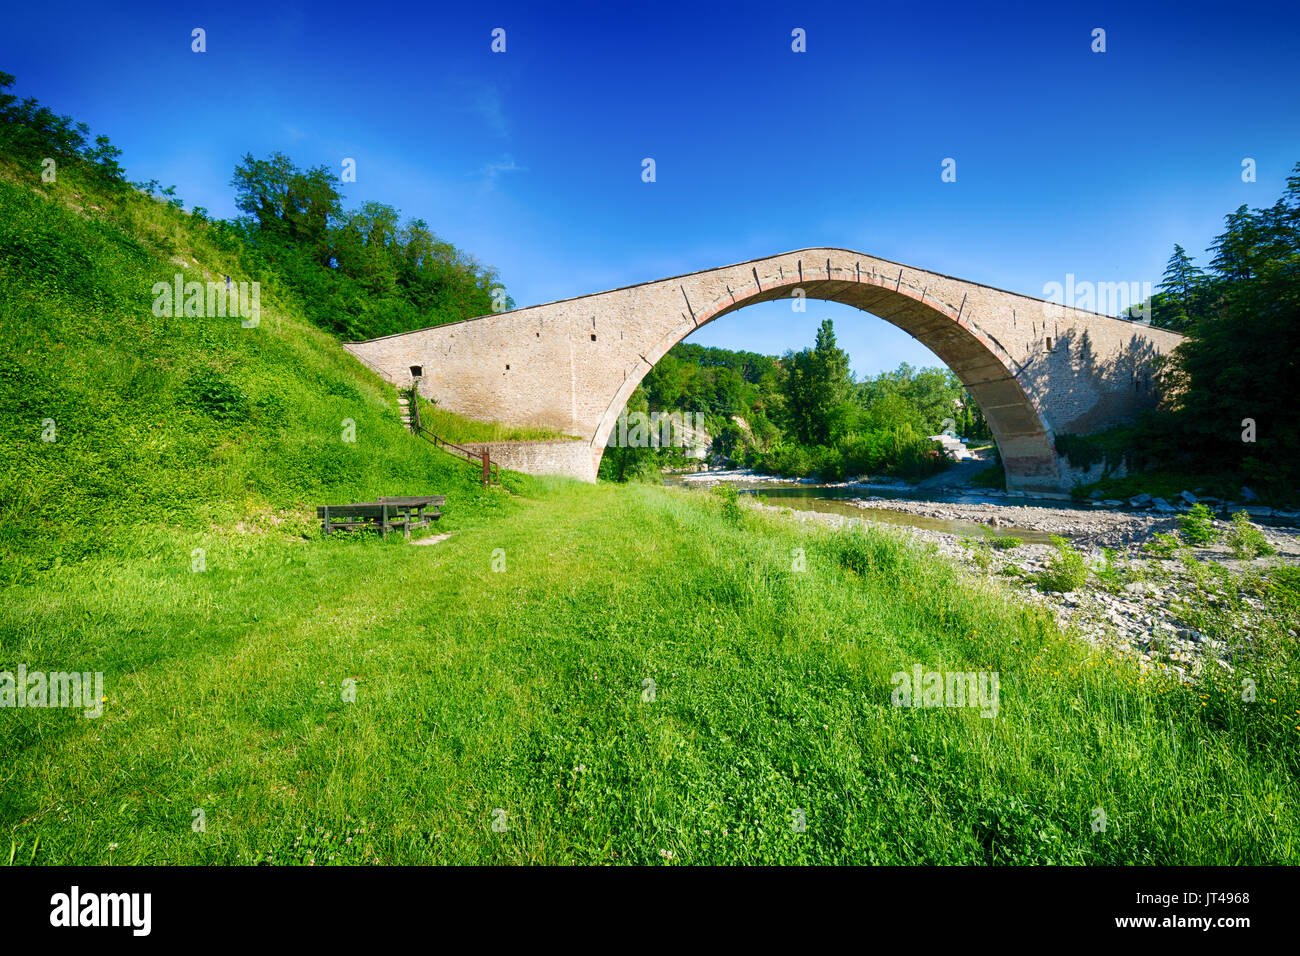 Pont Alidosi, chef d'œuvre de la renaissance du génie civil avec âne retour structure, l'une des merveilles de l'Italie Banque D'Images